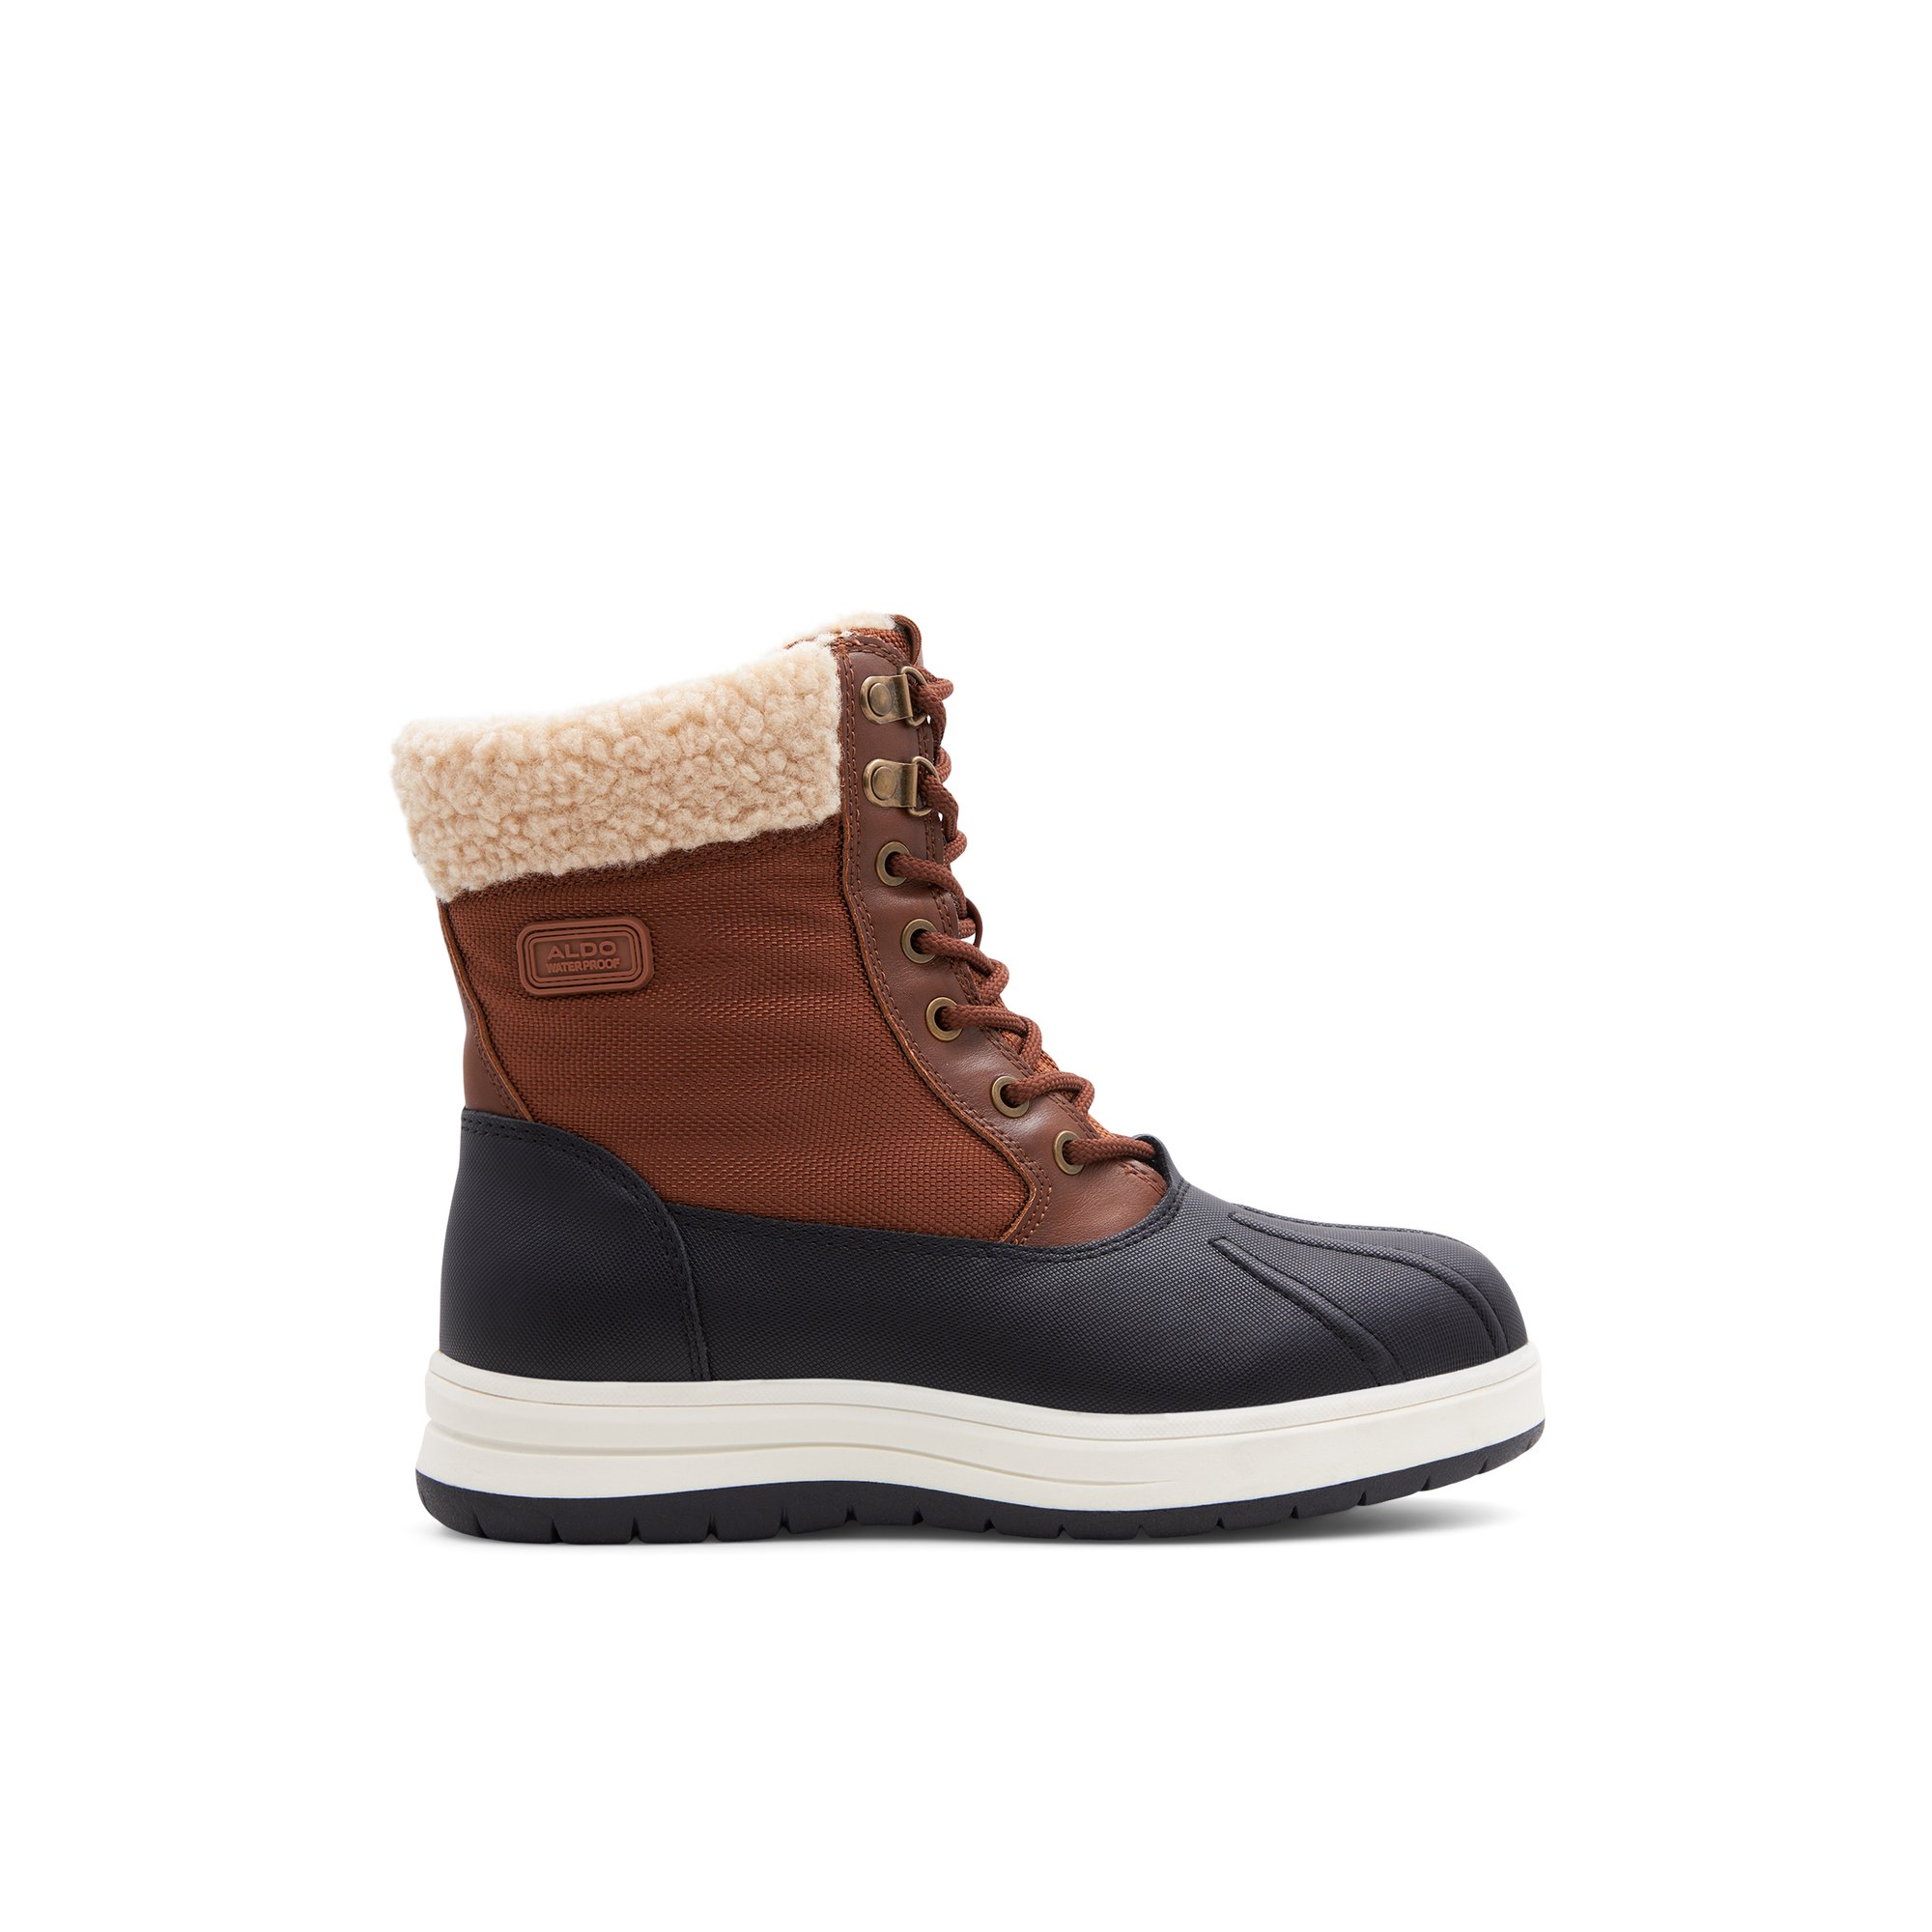 ALDO Flurrys - Women's Boots Winter - Brown